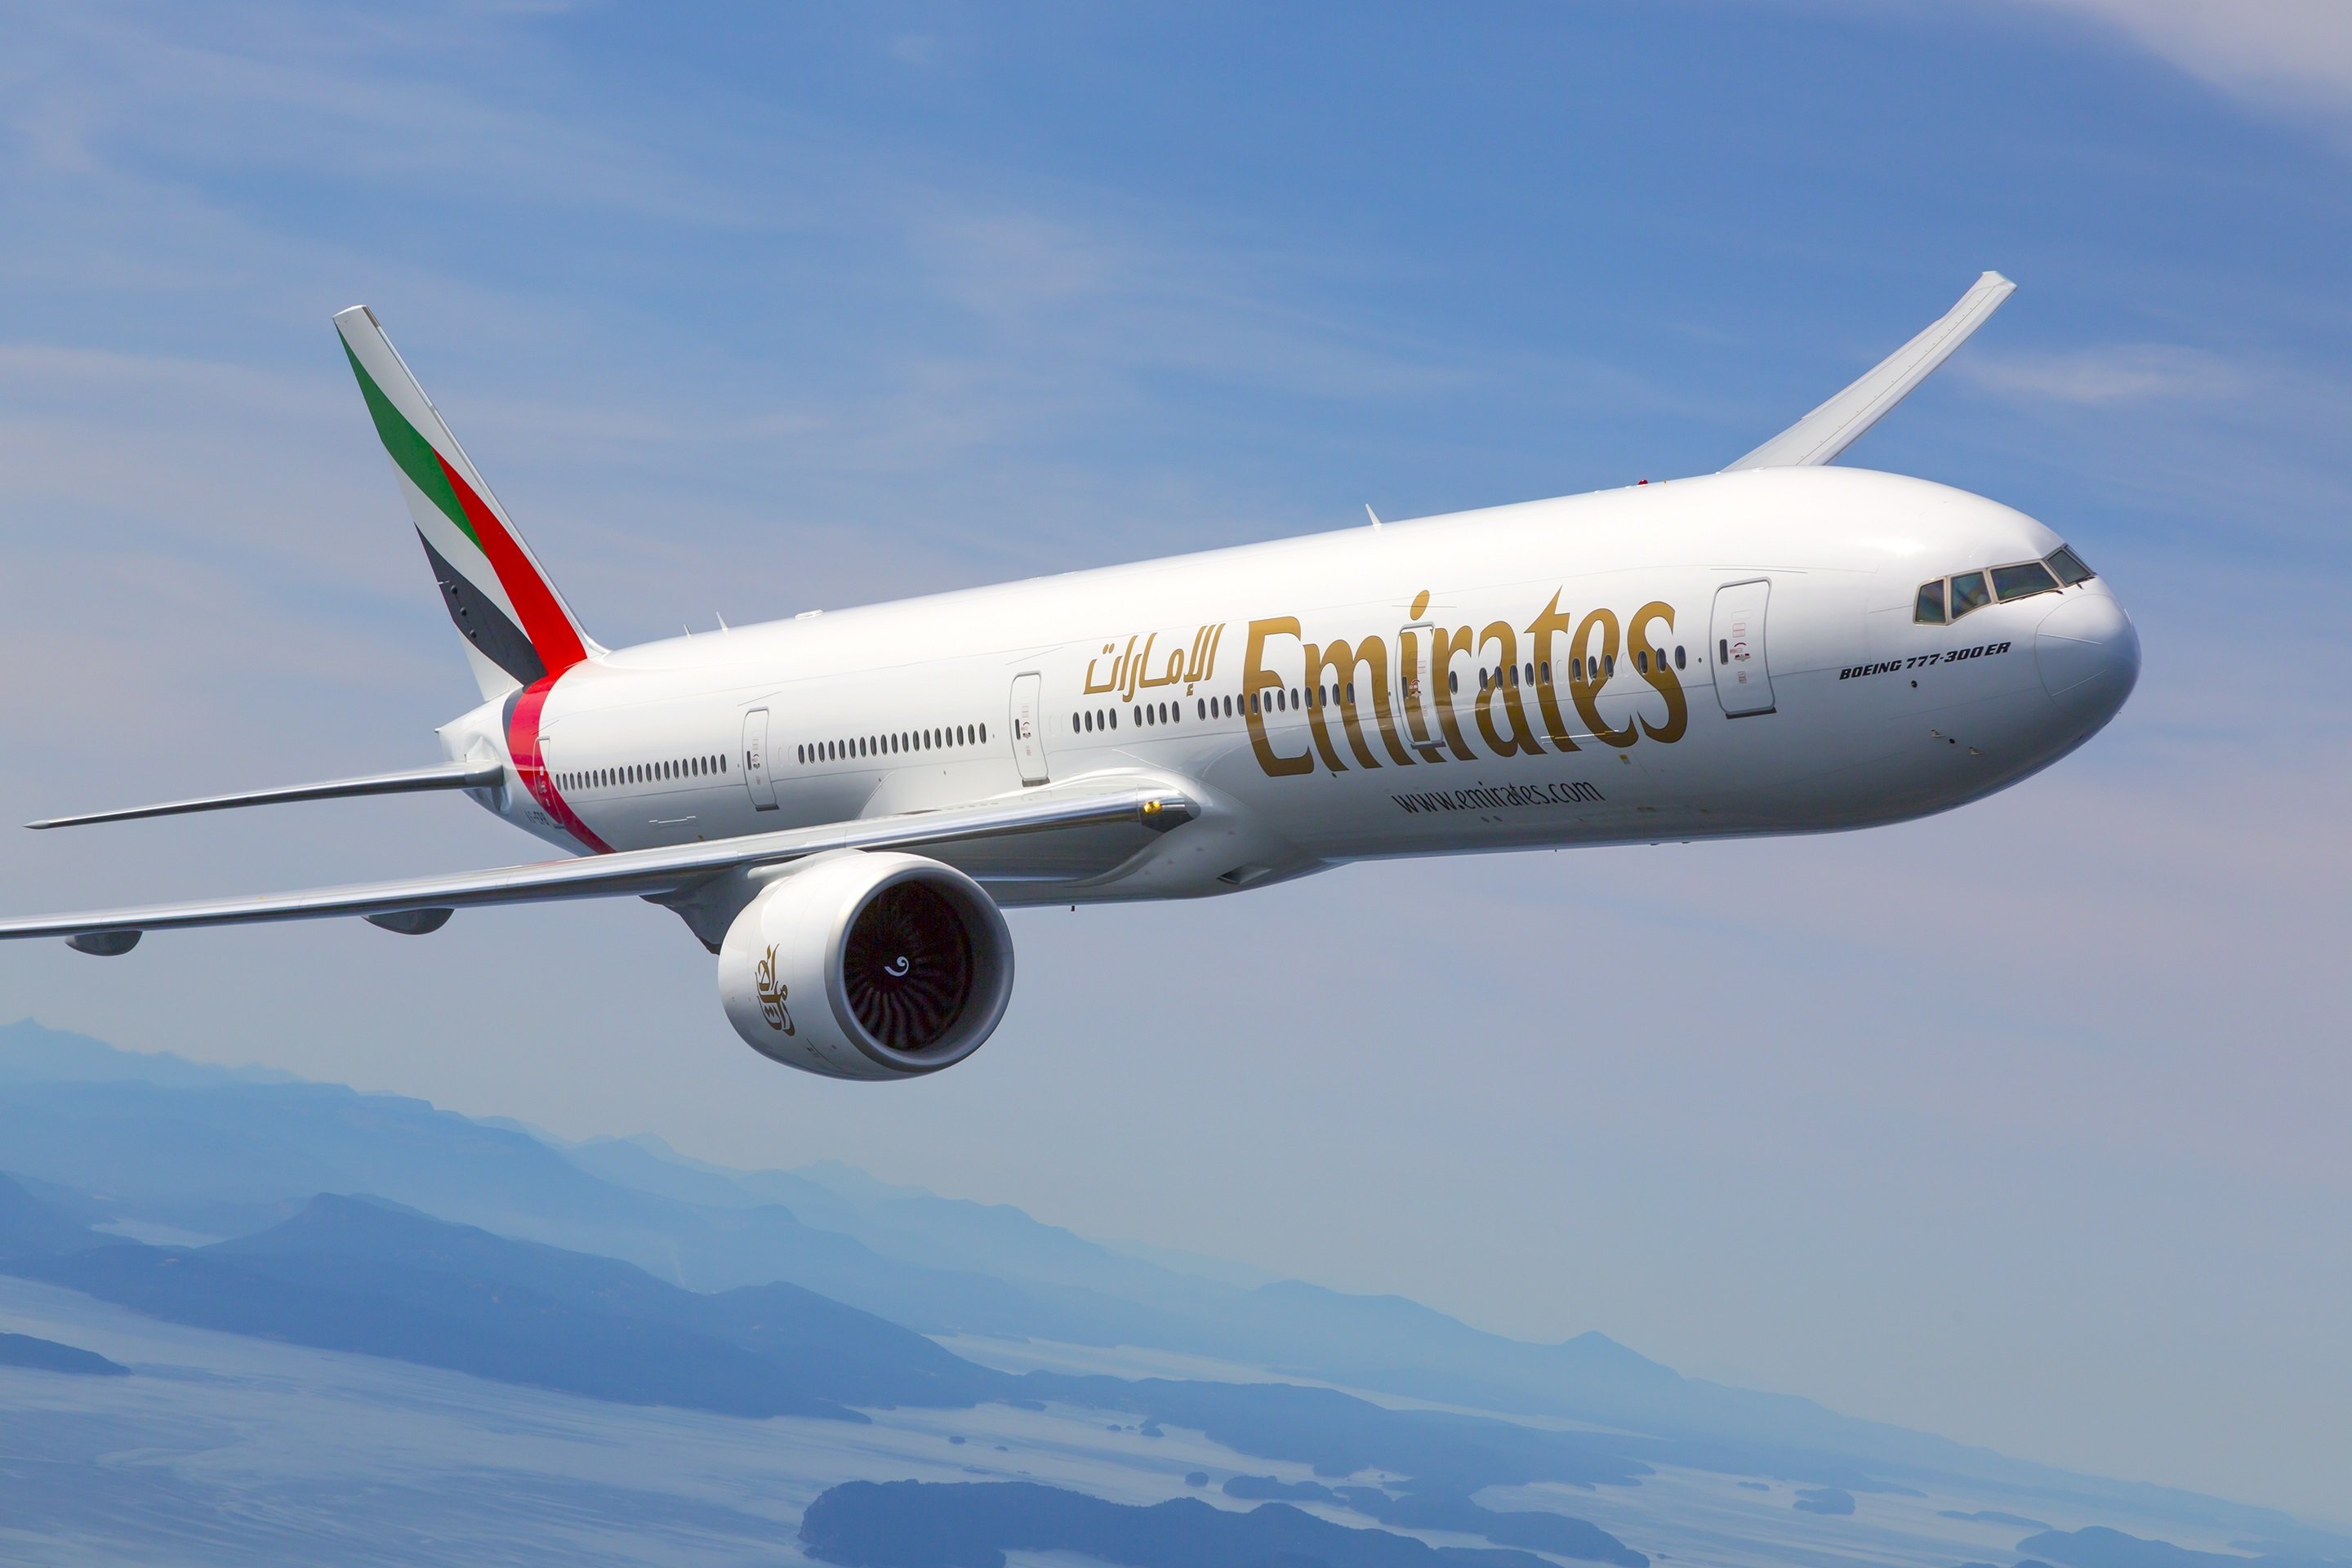 Emirates saca pecho de su ruta Barcelona-México: “Somos los únicos con vuelo directo”